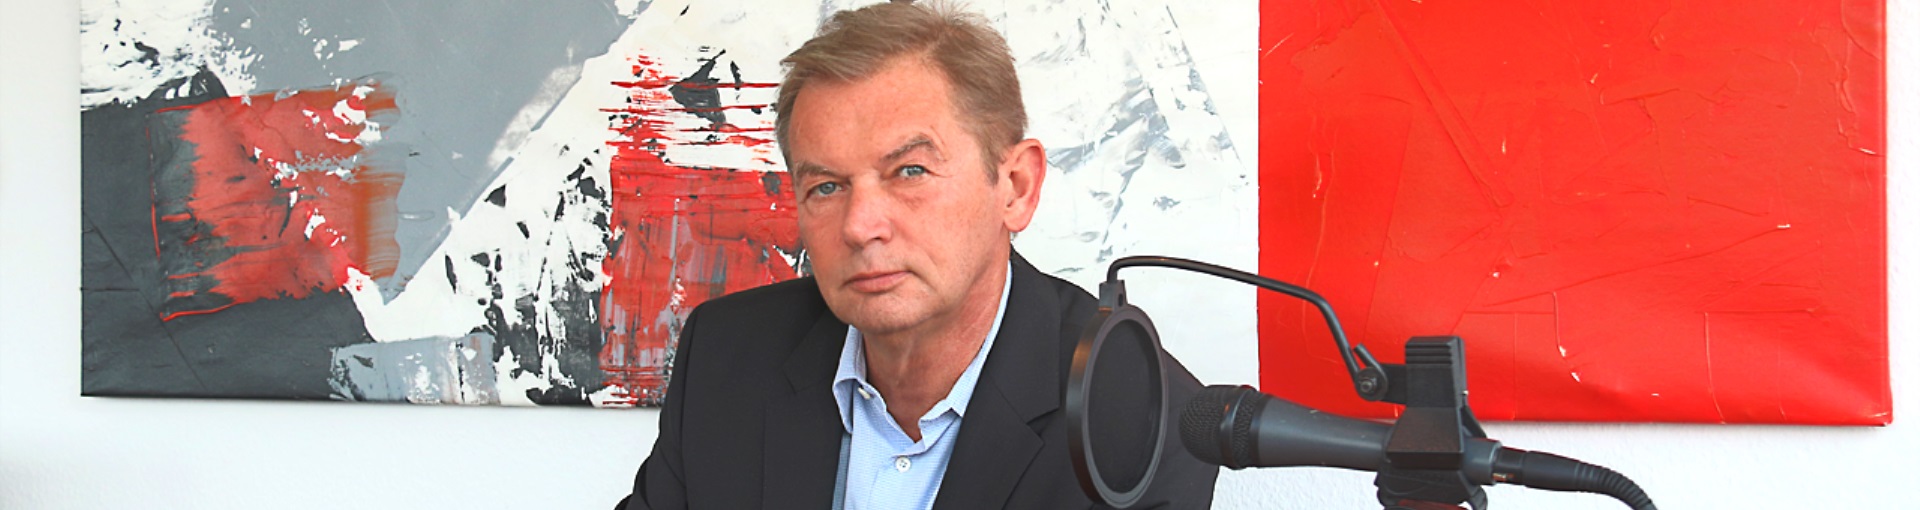 Ulrich Hinsen